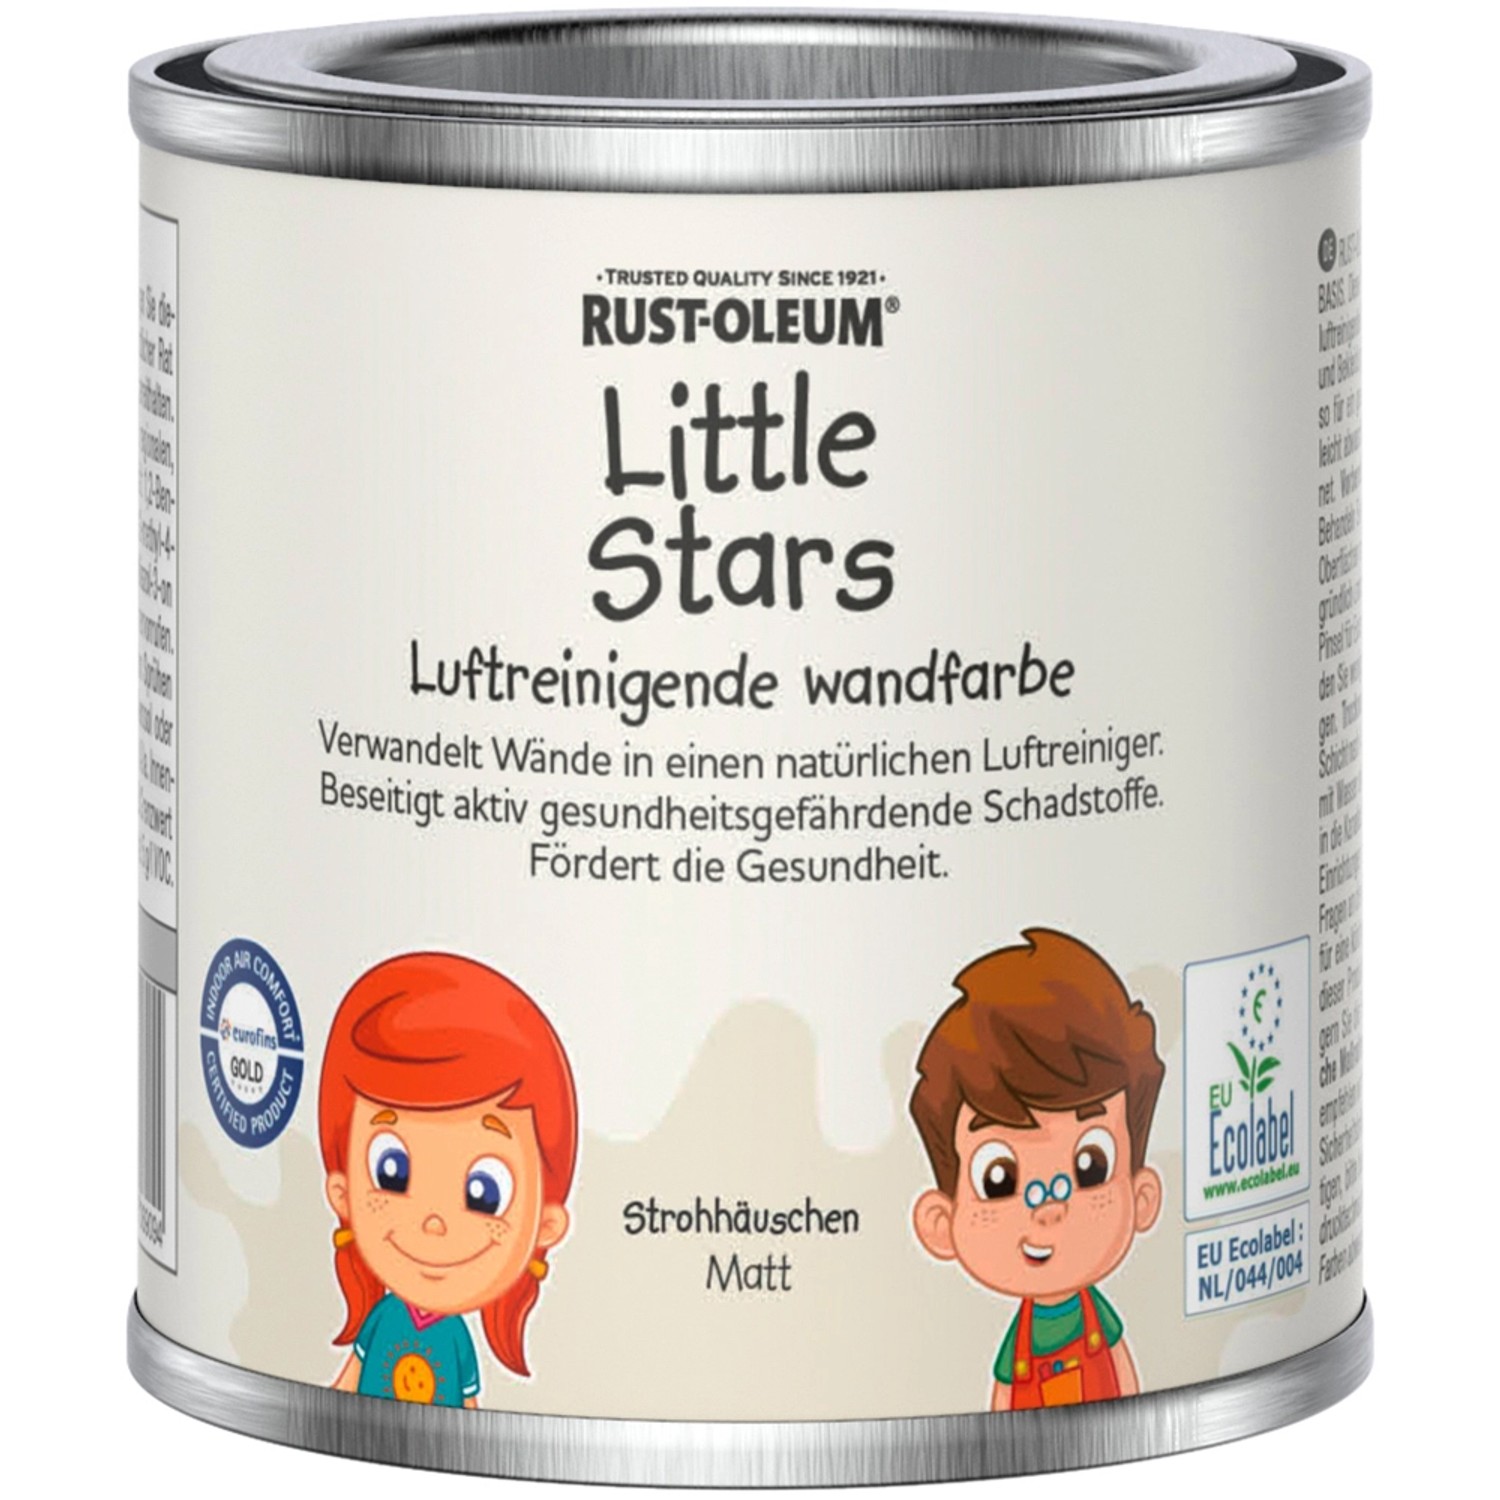 Rust-Oleum Little Stars Luftreinigende Wandfarbe Strohhäuschen 125 ml von Rust-Oleum